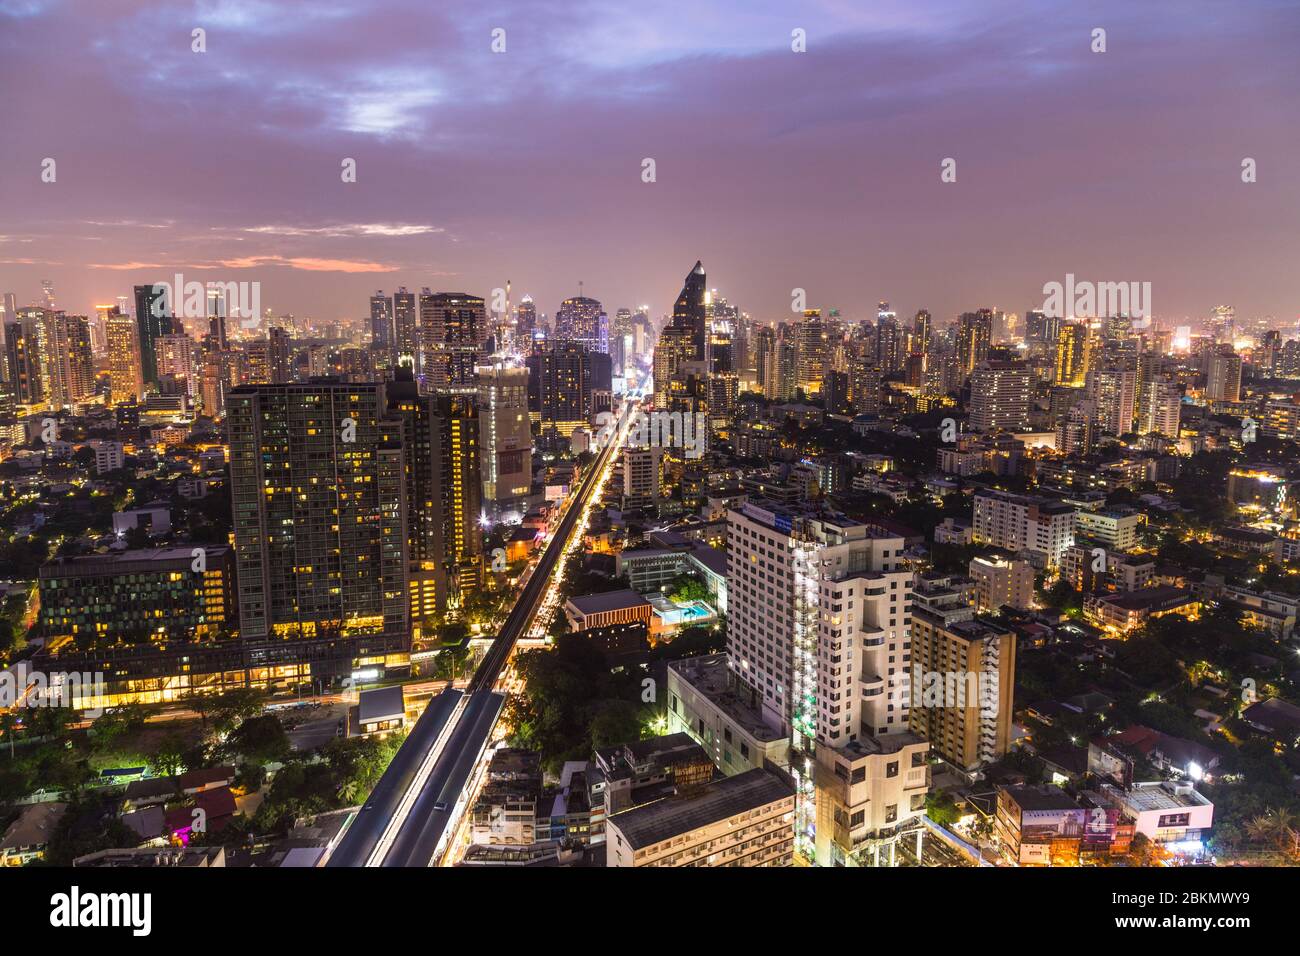 BANGKOK, THAILANDIA - 1 NOVEMBRE 2017: Vista dello skyline di Bangkok al crepuscolo - con grattacieli ed edifici. Foto Stock